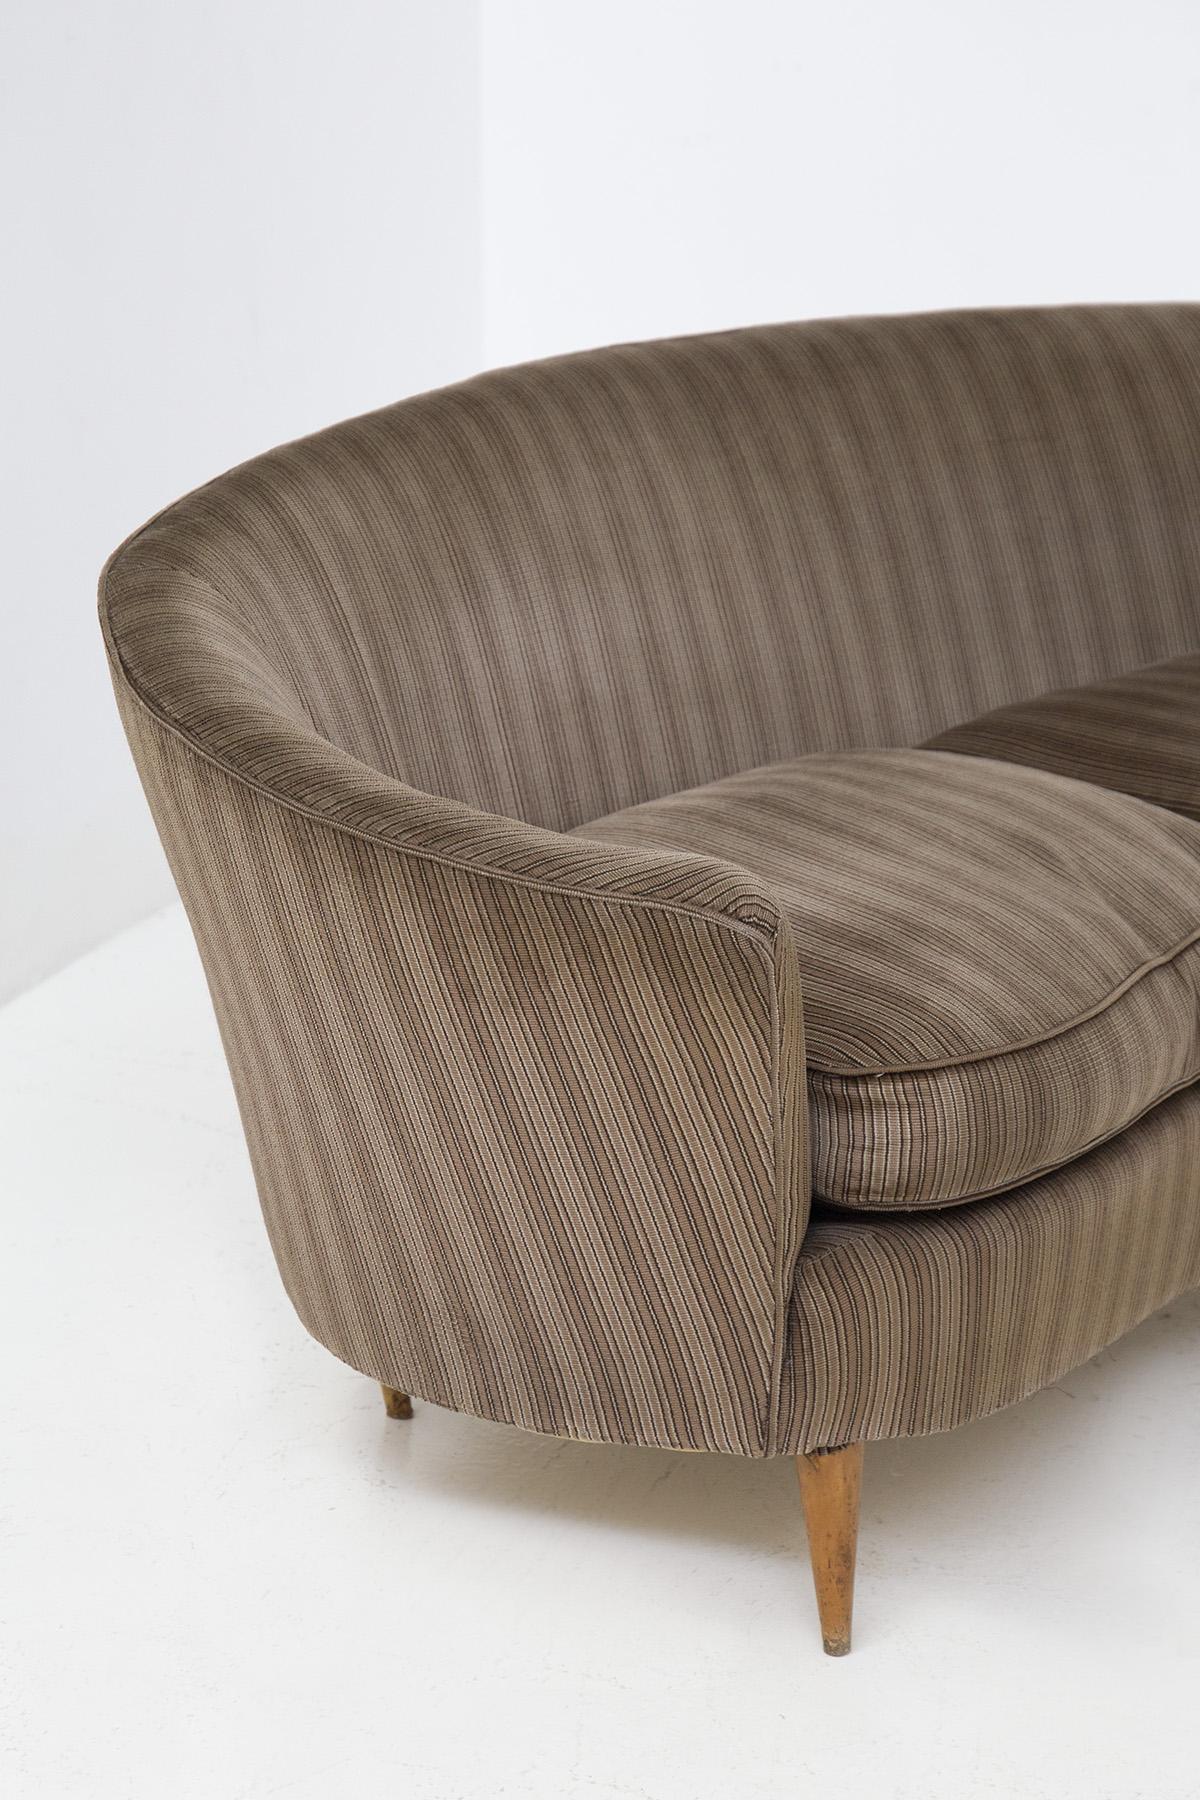 Mid-20th Century Italian Sofa attributed to Ico Parisi in original fabric For Sale